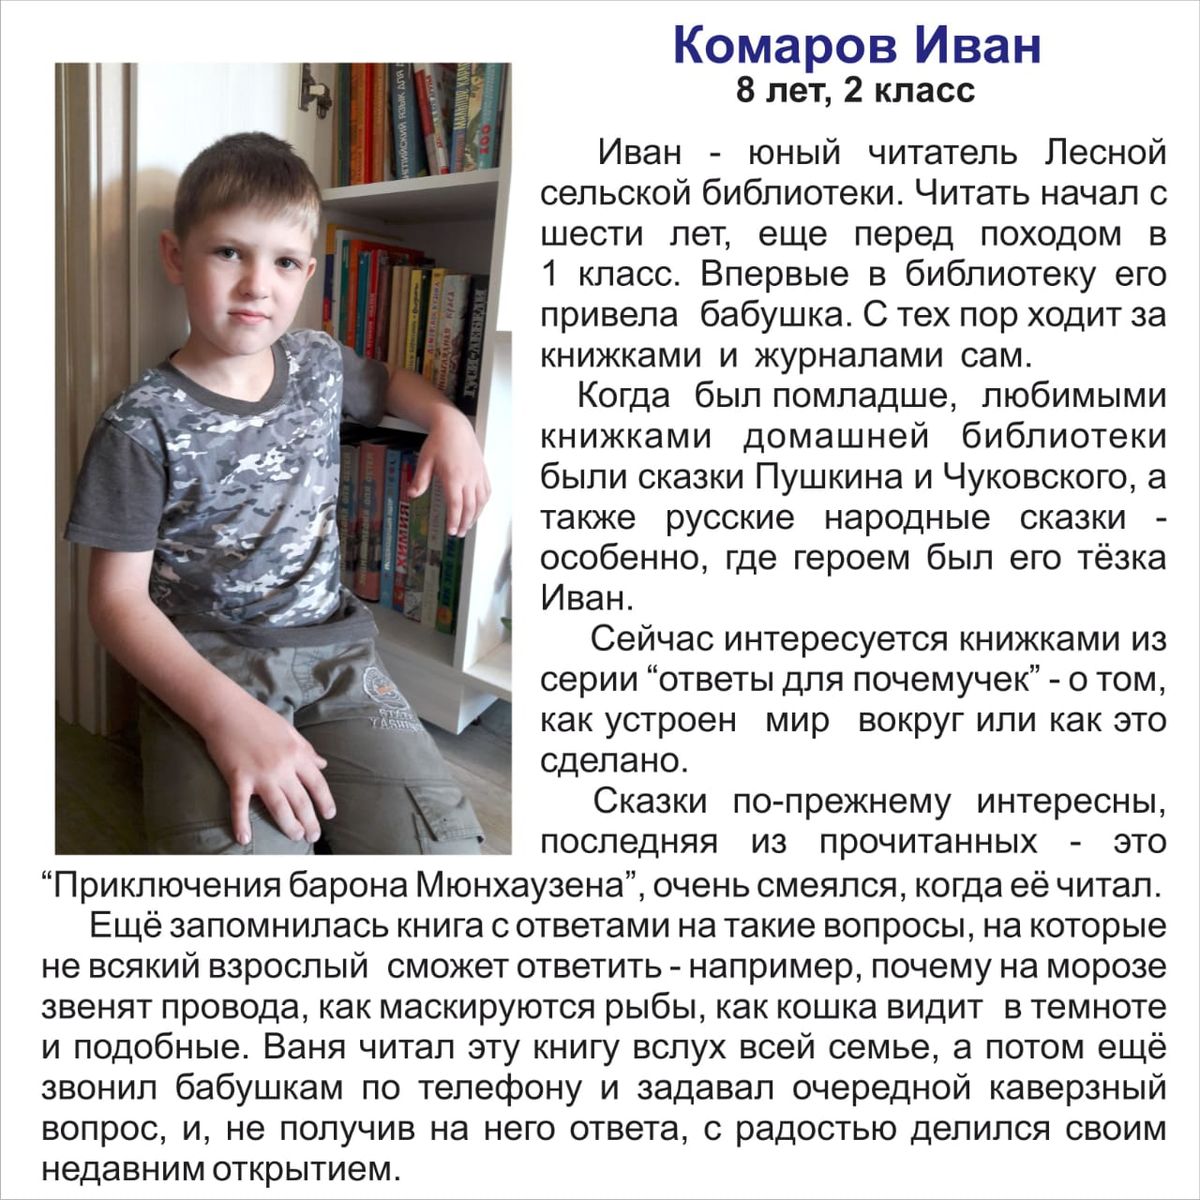 Комаров Иван 8 лет 2 класс